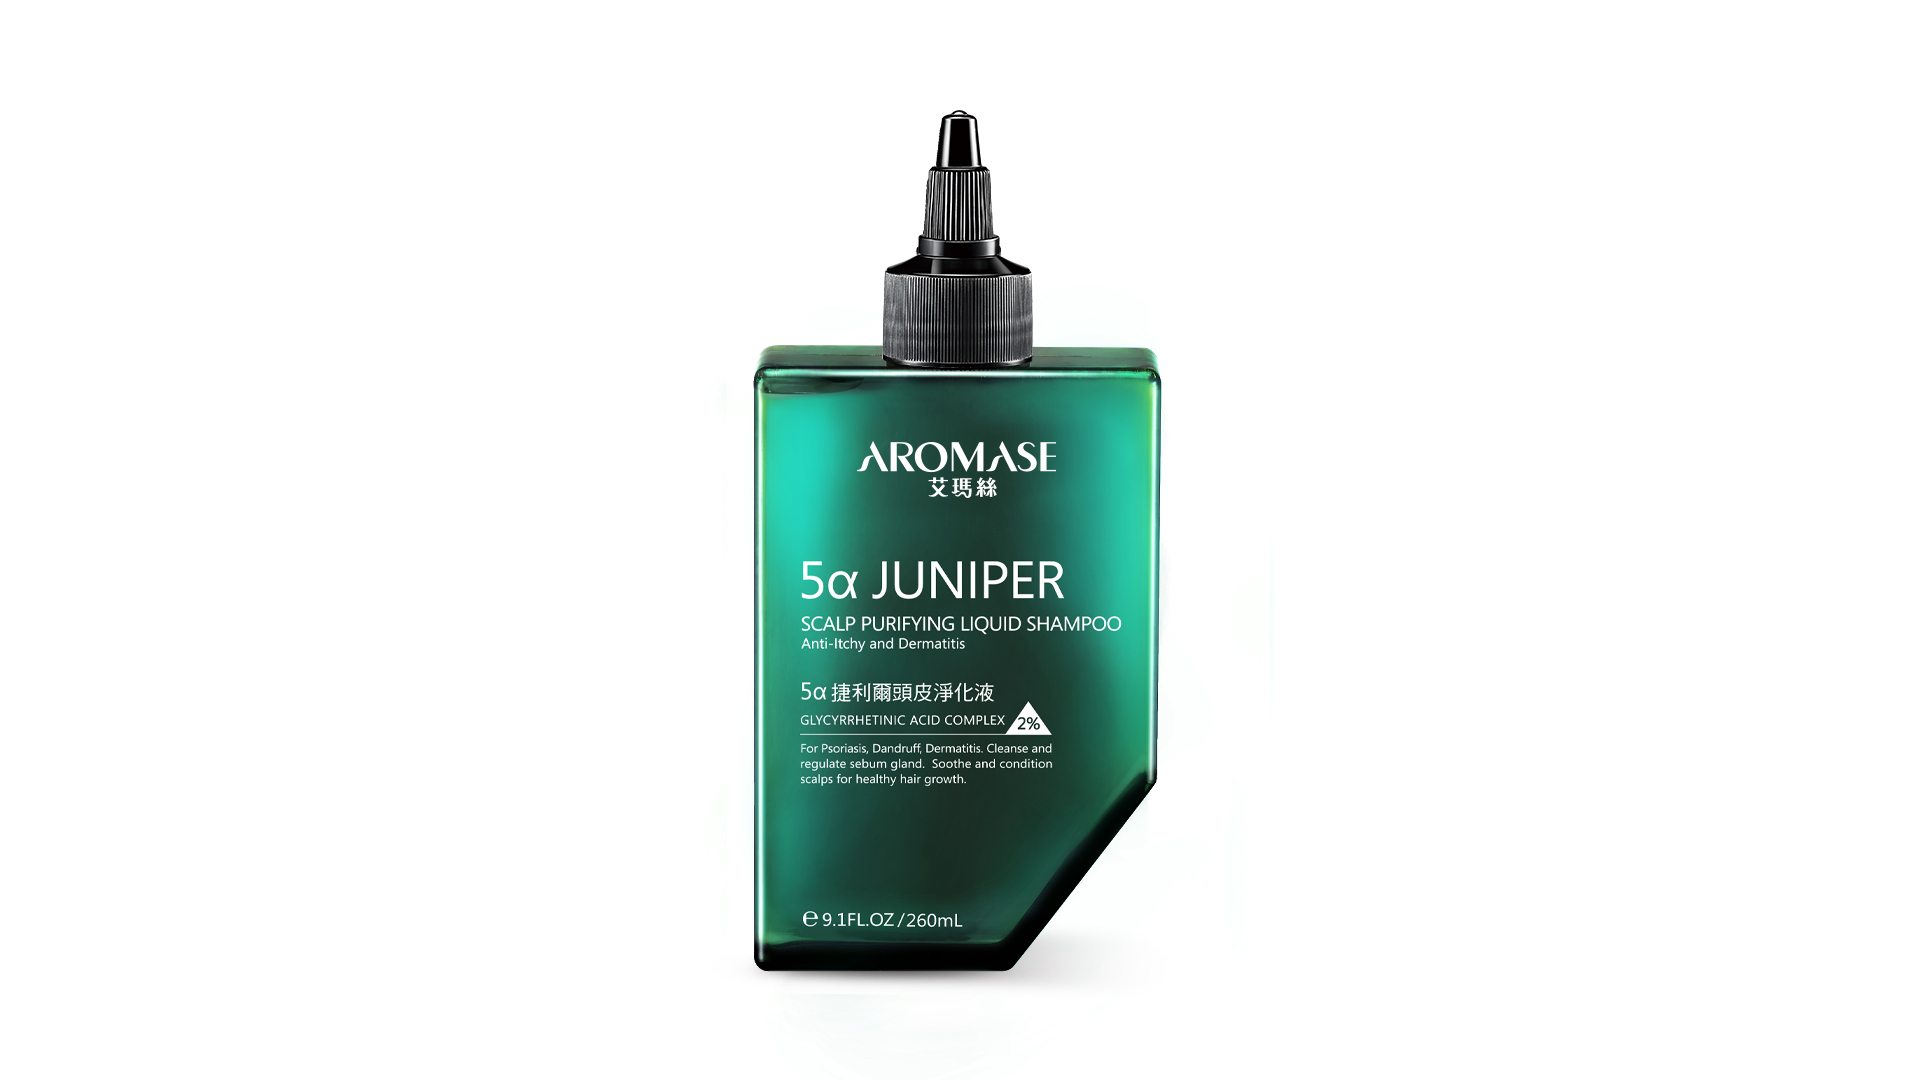 5α Juniper Scalp Purifying Liquid Shampoo / MacroHI co., Ltd